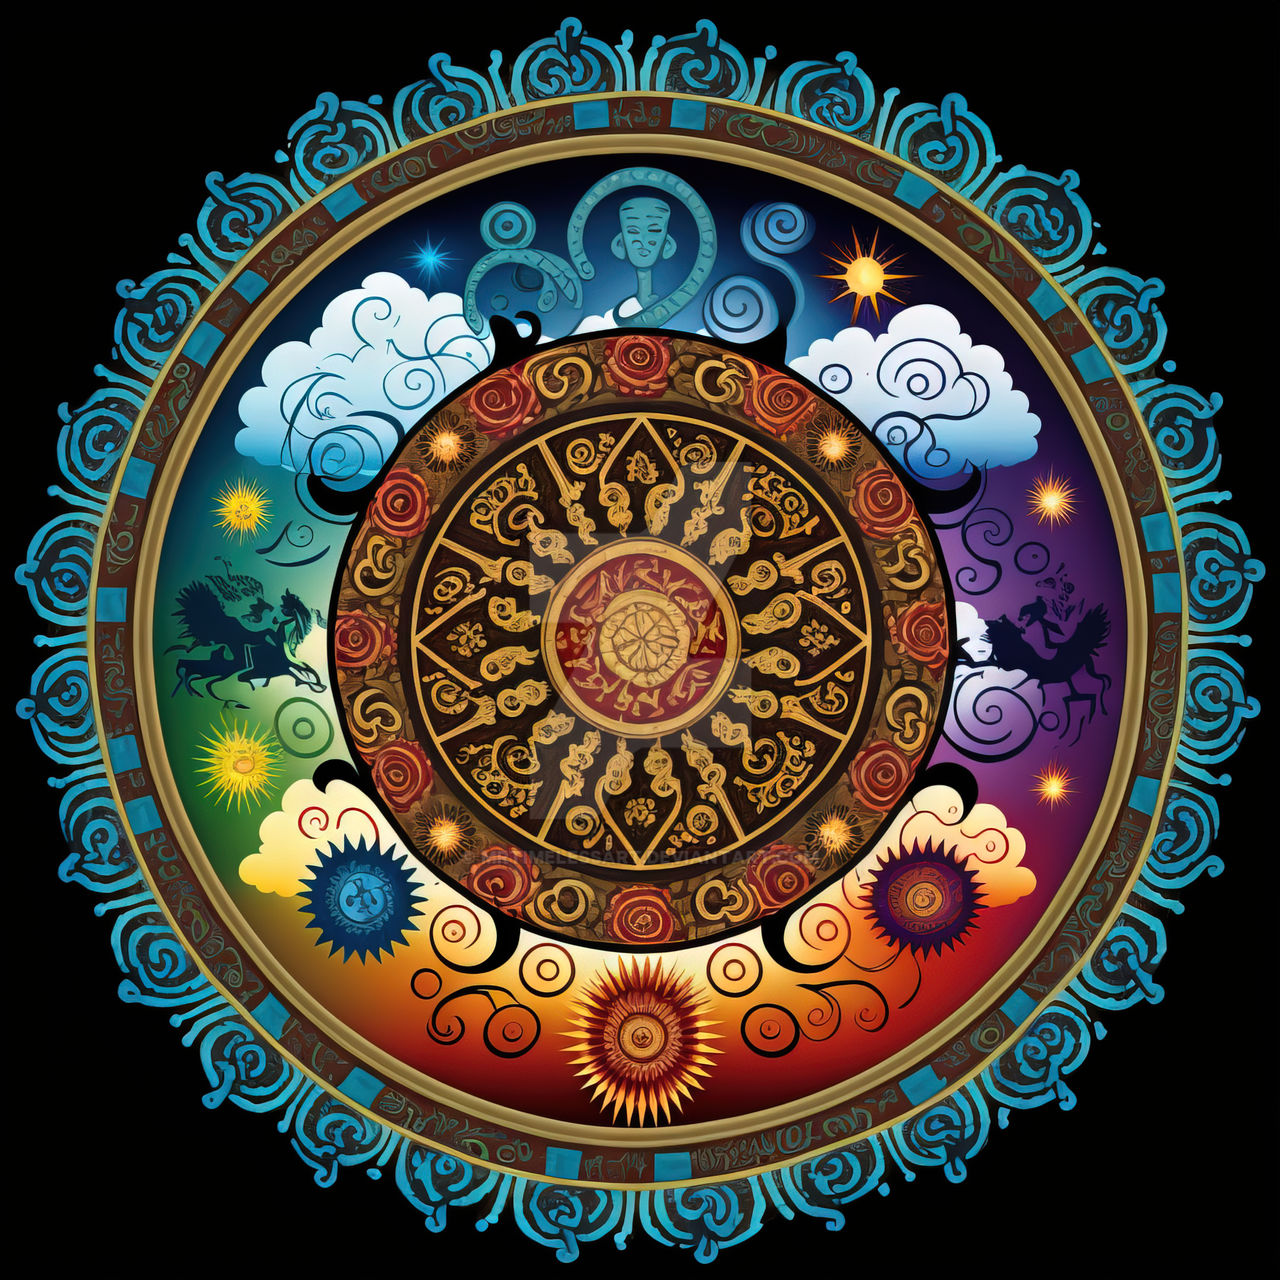 Colorful Dharma Wheel (22) by MrTimelessArt on DeviantArt